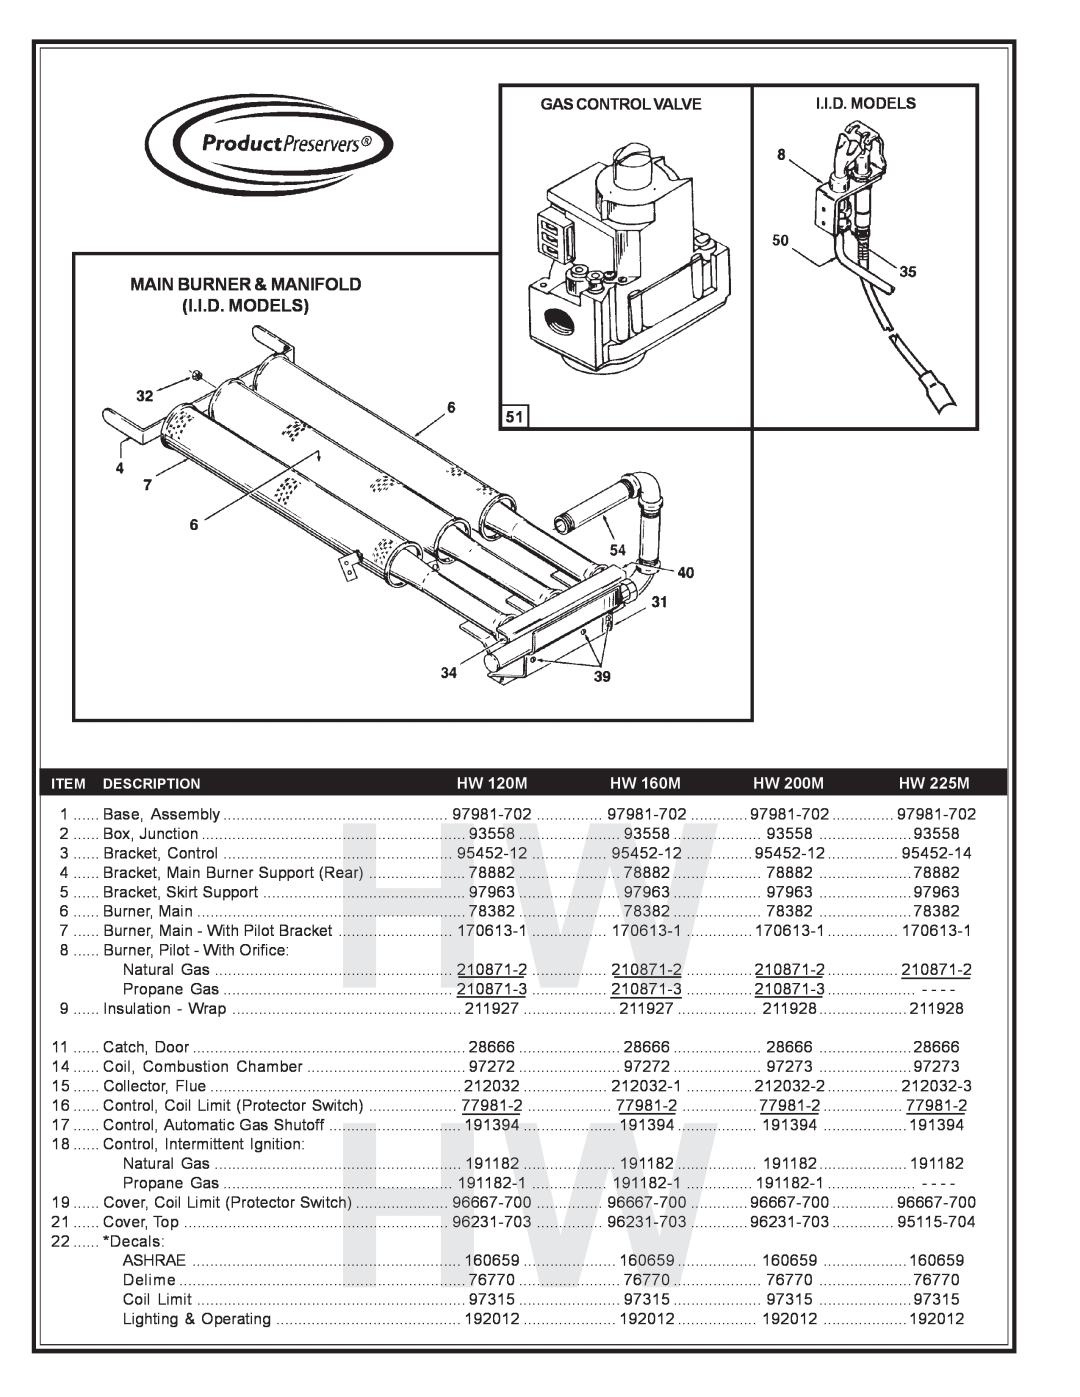 A.O. Smith HW-225M manual Main Burner & Manifold I.I.D. Models, Gas Control Valve, HW 120M, HW 160M, HW 200M, HW 225M 